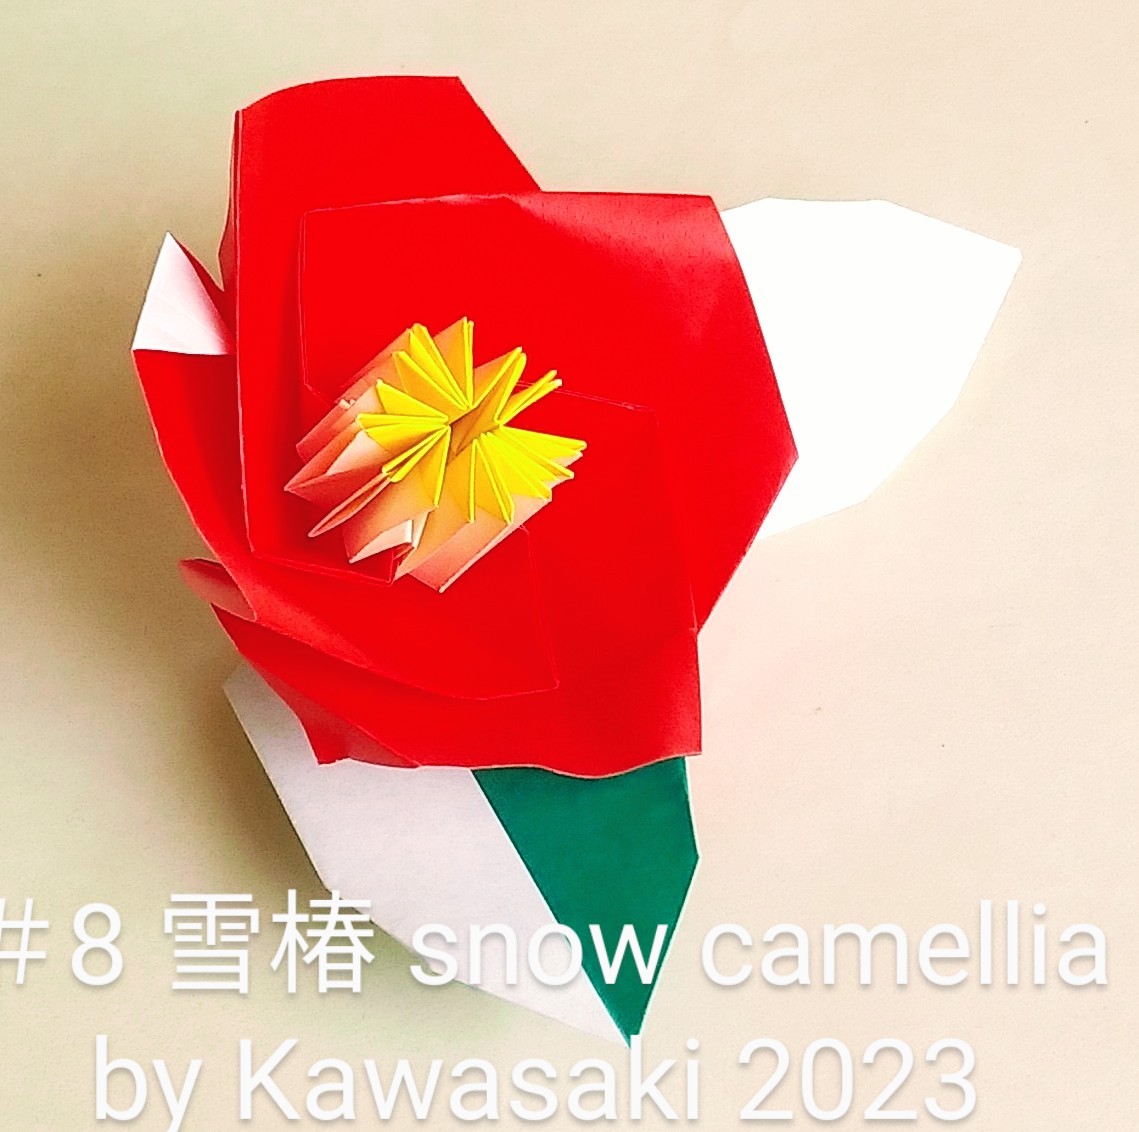 2023/02/05(Sun) 18:16「8雪椿 snow camellia(作2023,2/5,10:50) 」川崎敏和 T.Kawasaki
（創作者 Author：川崎敏和 T.Kawasaki,　製作者 Folder：川崎敏和 T.Kawasaki,　出典 Source：2023年川崎敏和折り紙キット）
 2021年マイベスト第一位作品【椿】に雪を積もらせました。